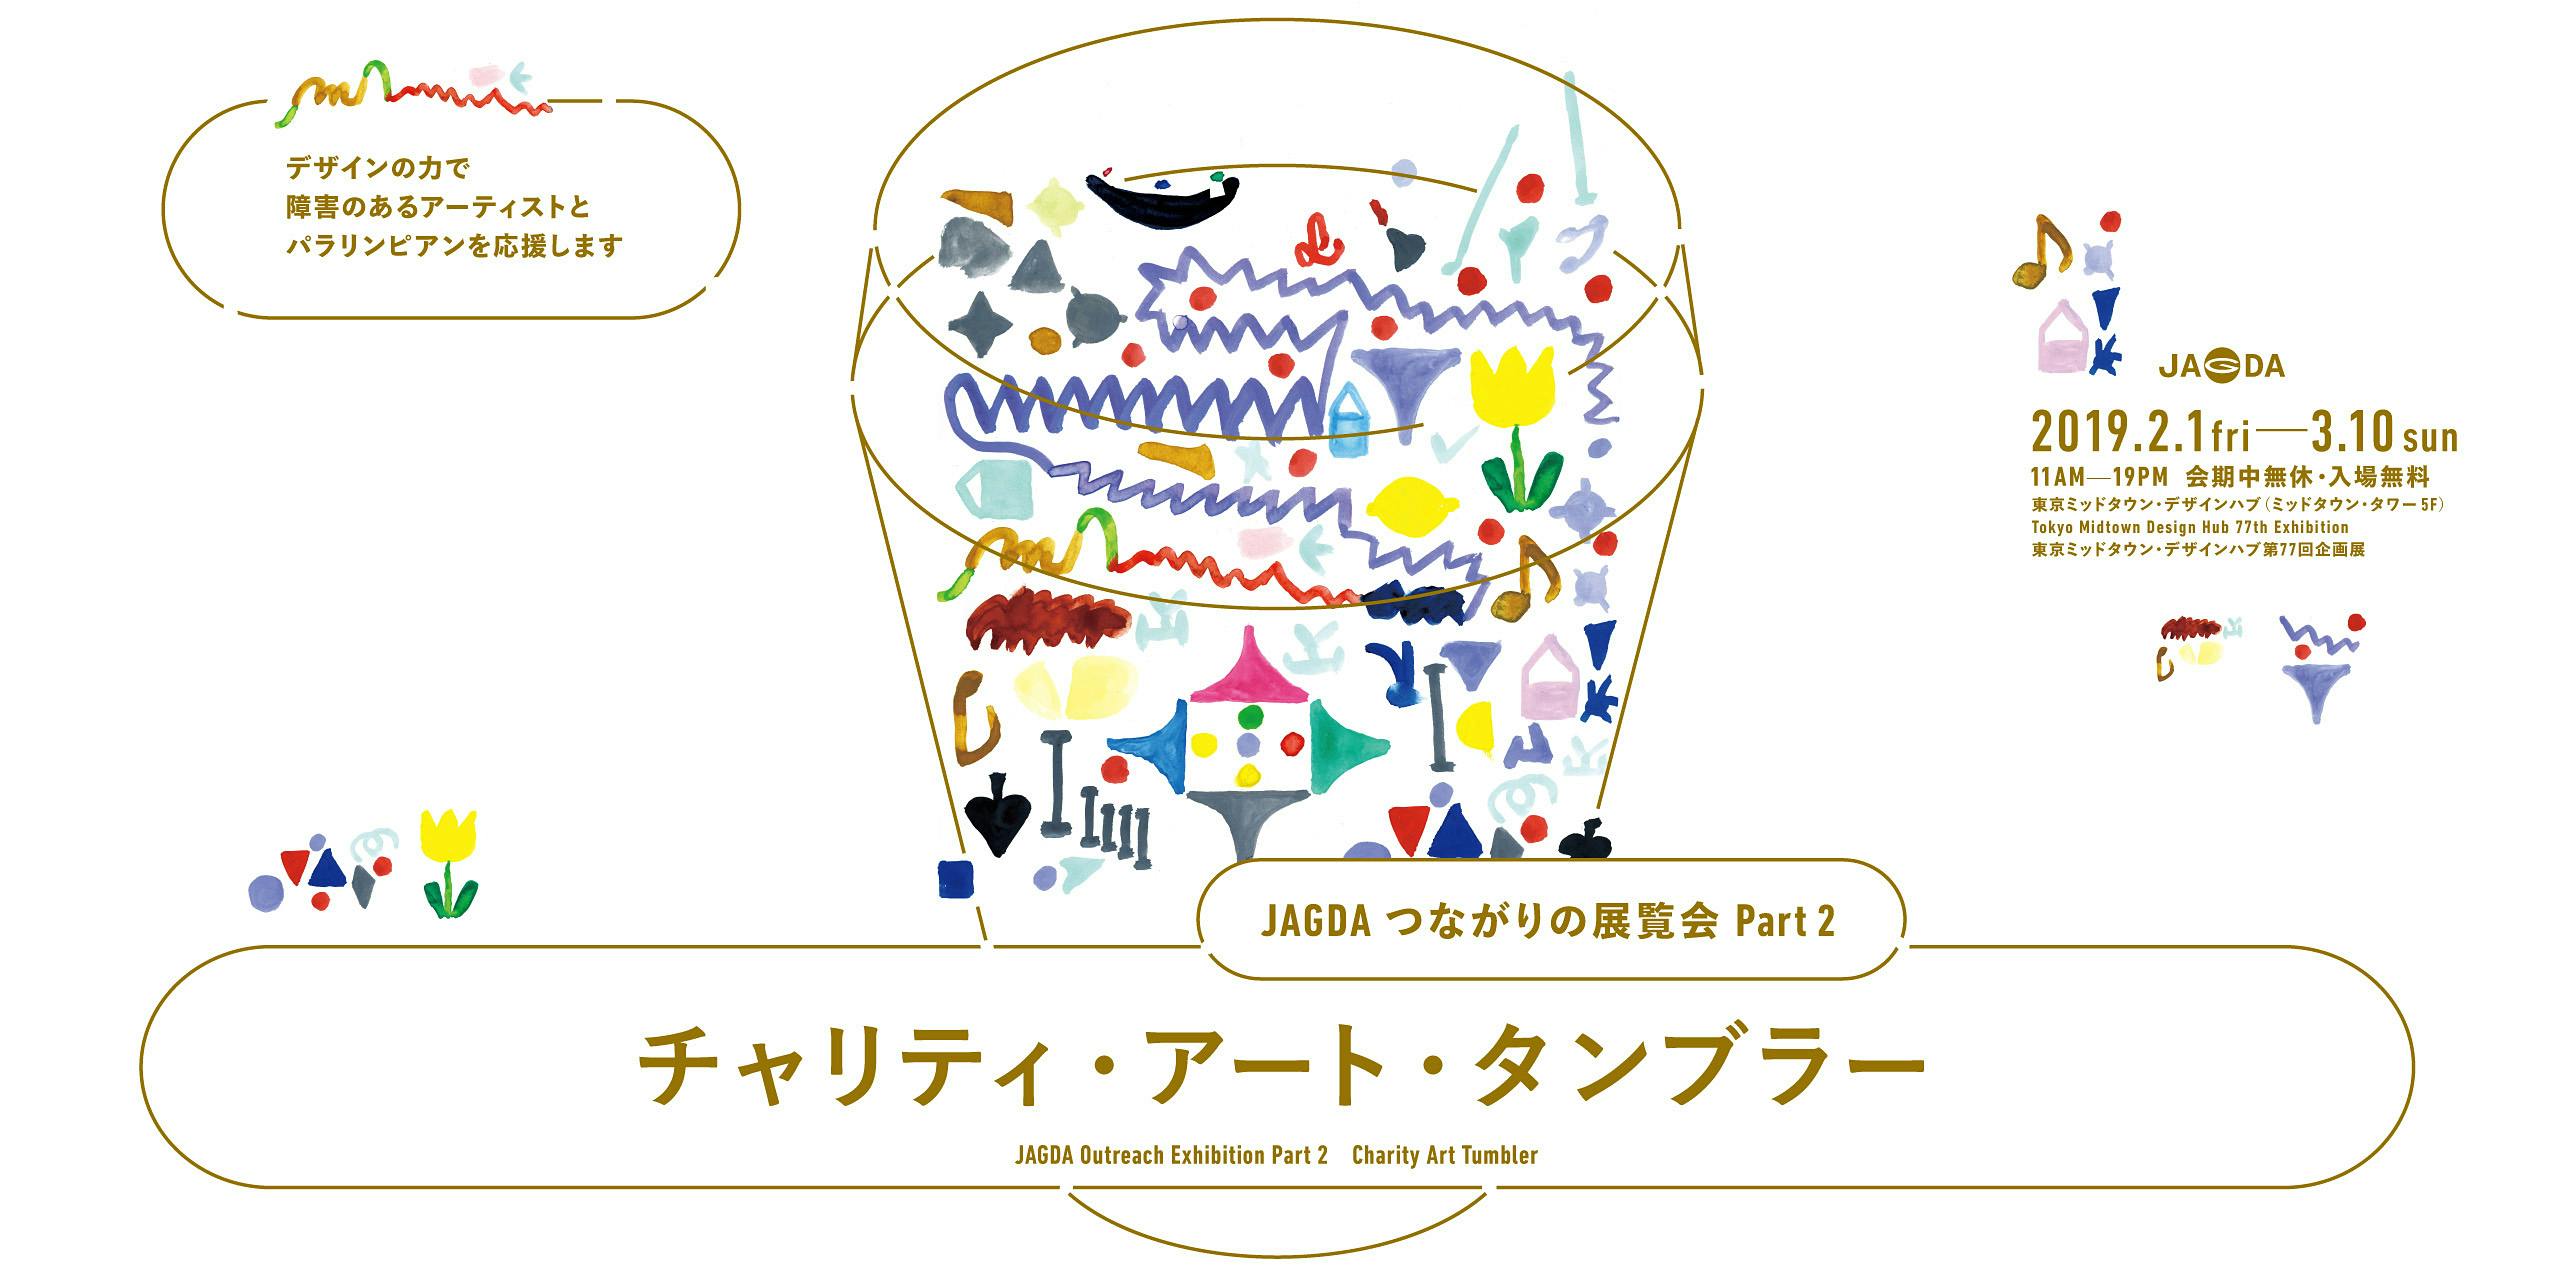 東京ミッドタウン・デザイン部「JAGDAつながりの展覧会 Part 2 チャリティ・アート・タンブラー」ギャラリーツアー